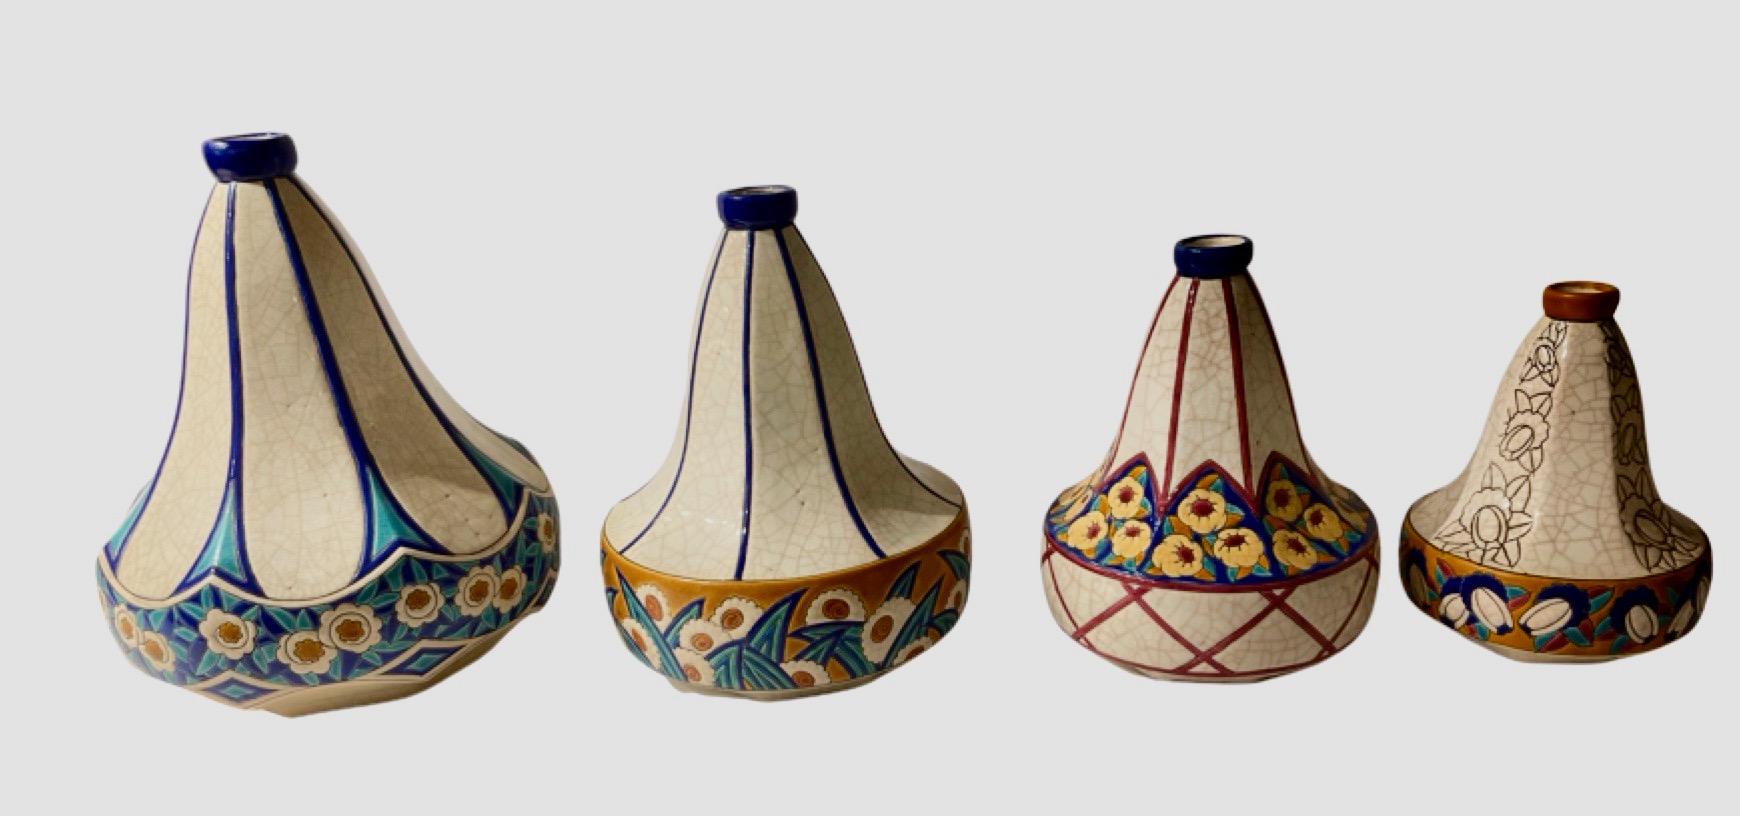 Longwy Art Deco French Cloisonné Ceramic Vase For Sale 3